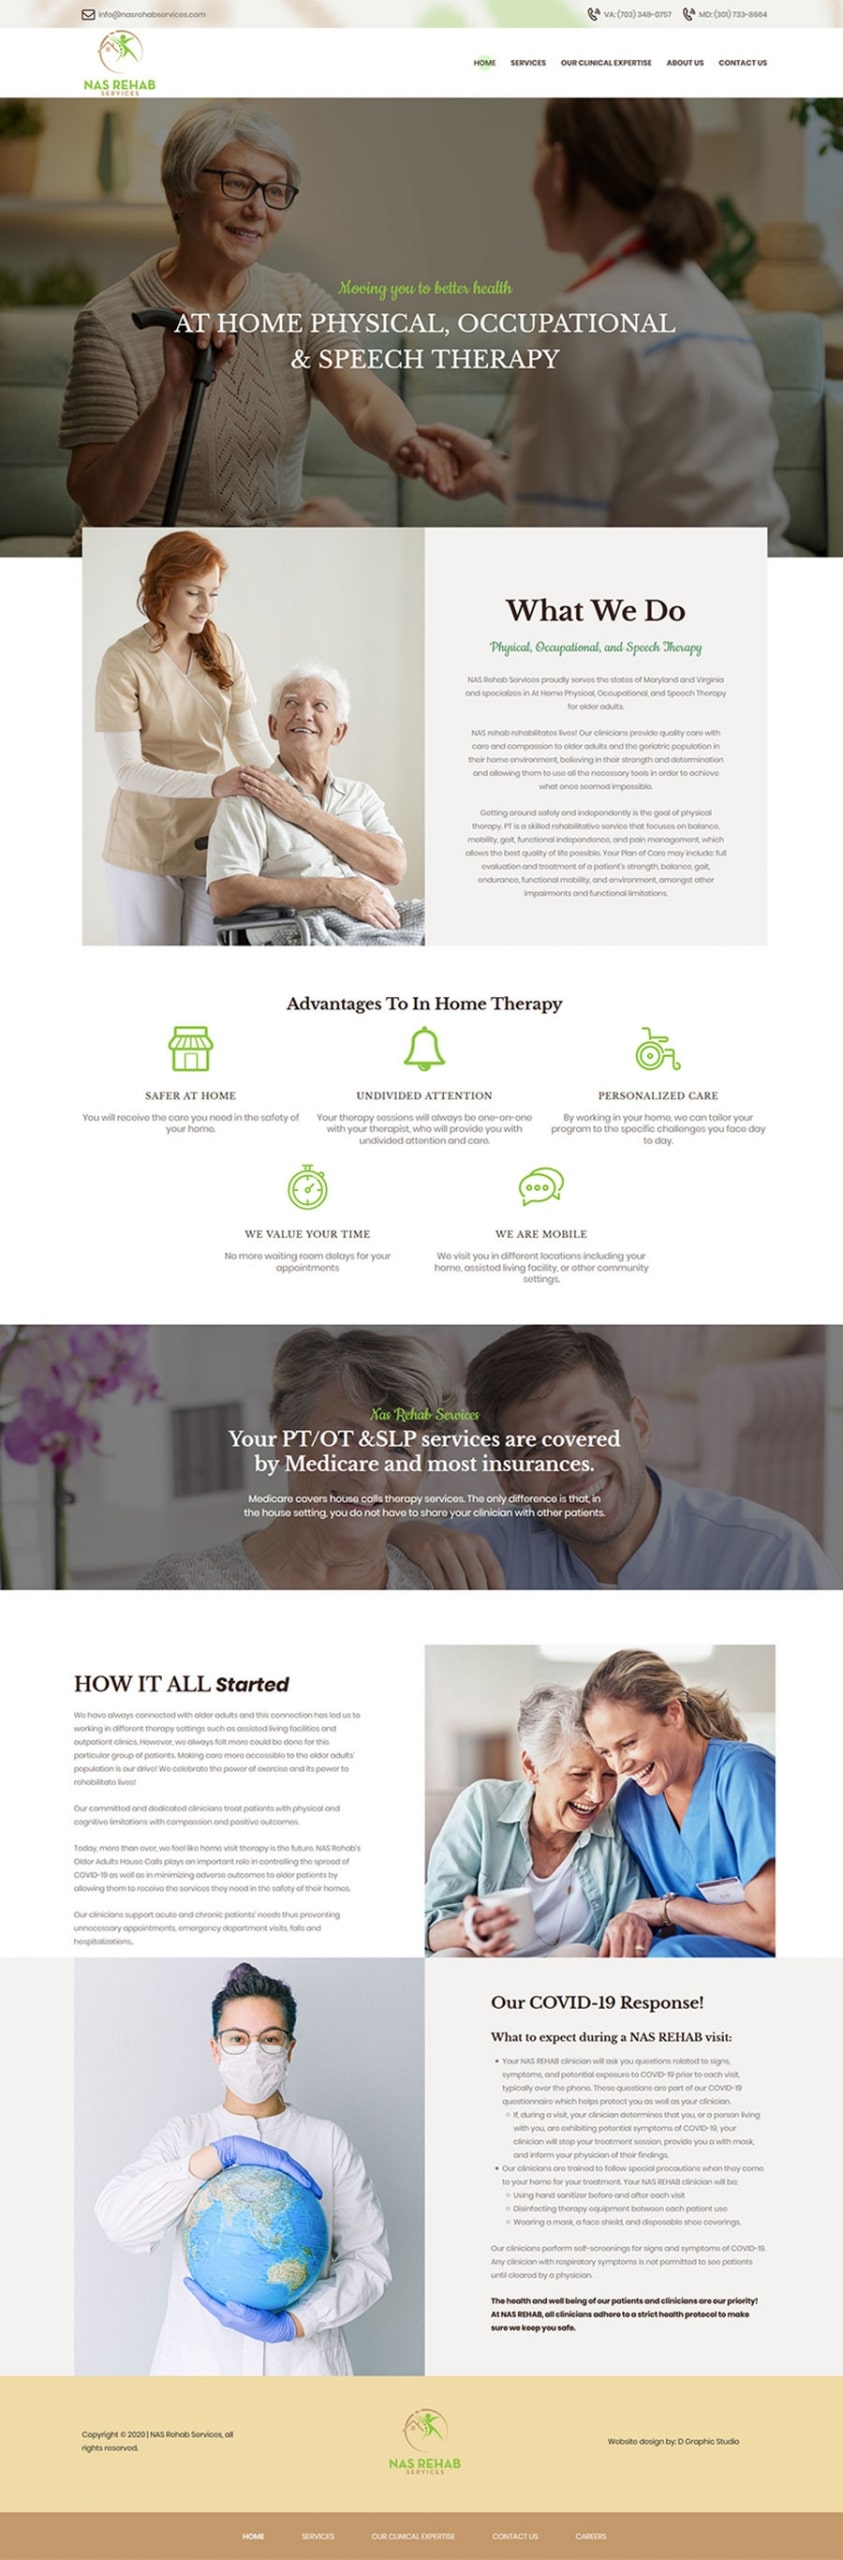 Doctor Website Design Services